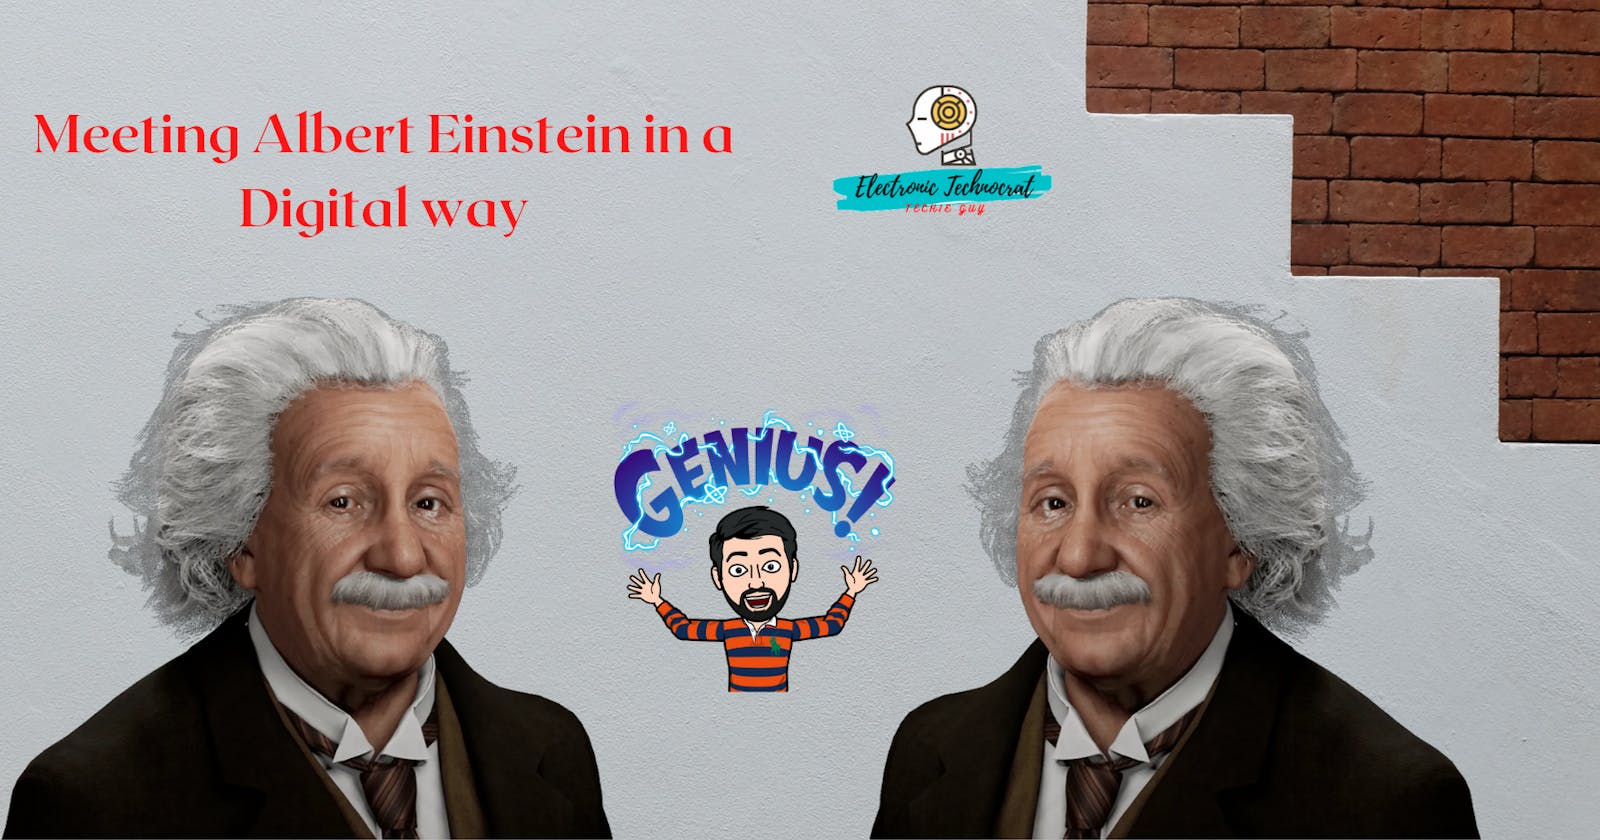 Meeting Albert Einstein in a Digital way!